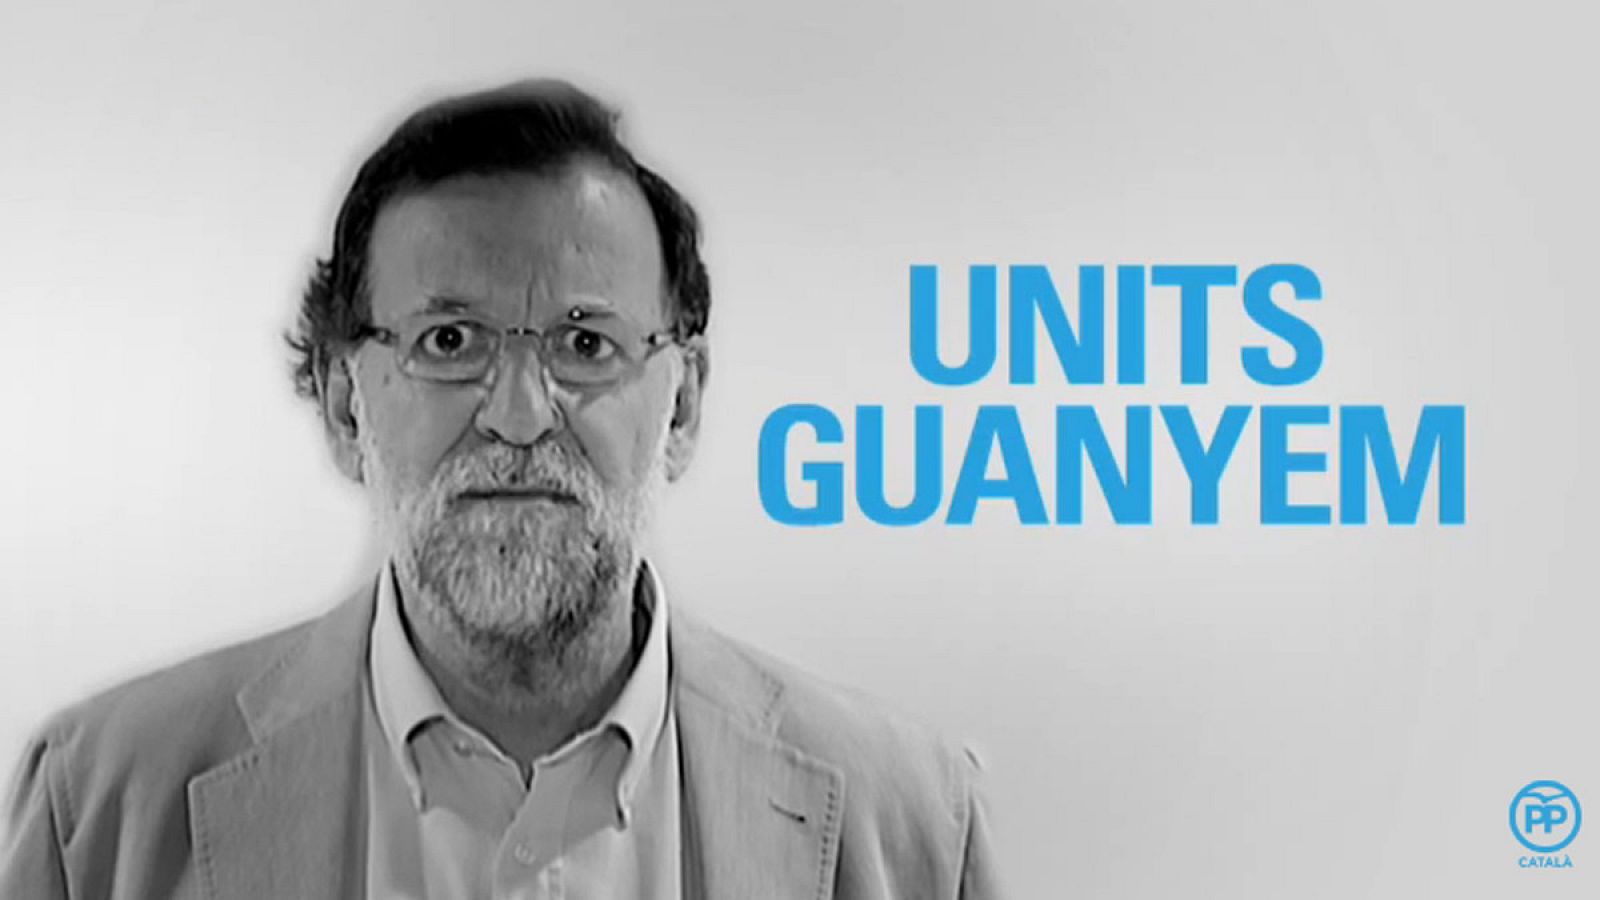 Momento del vídeo electoral en el que el presidente del PP, Mariano Rajoy, afirma que "units, guanyem".